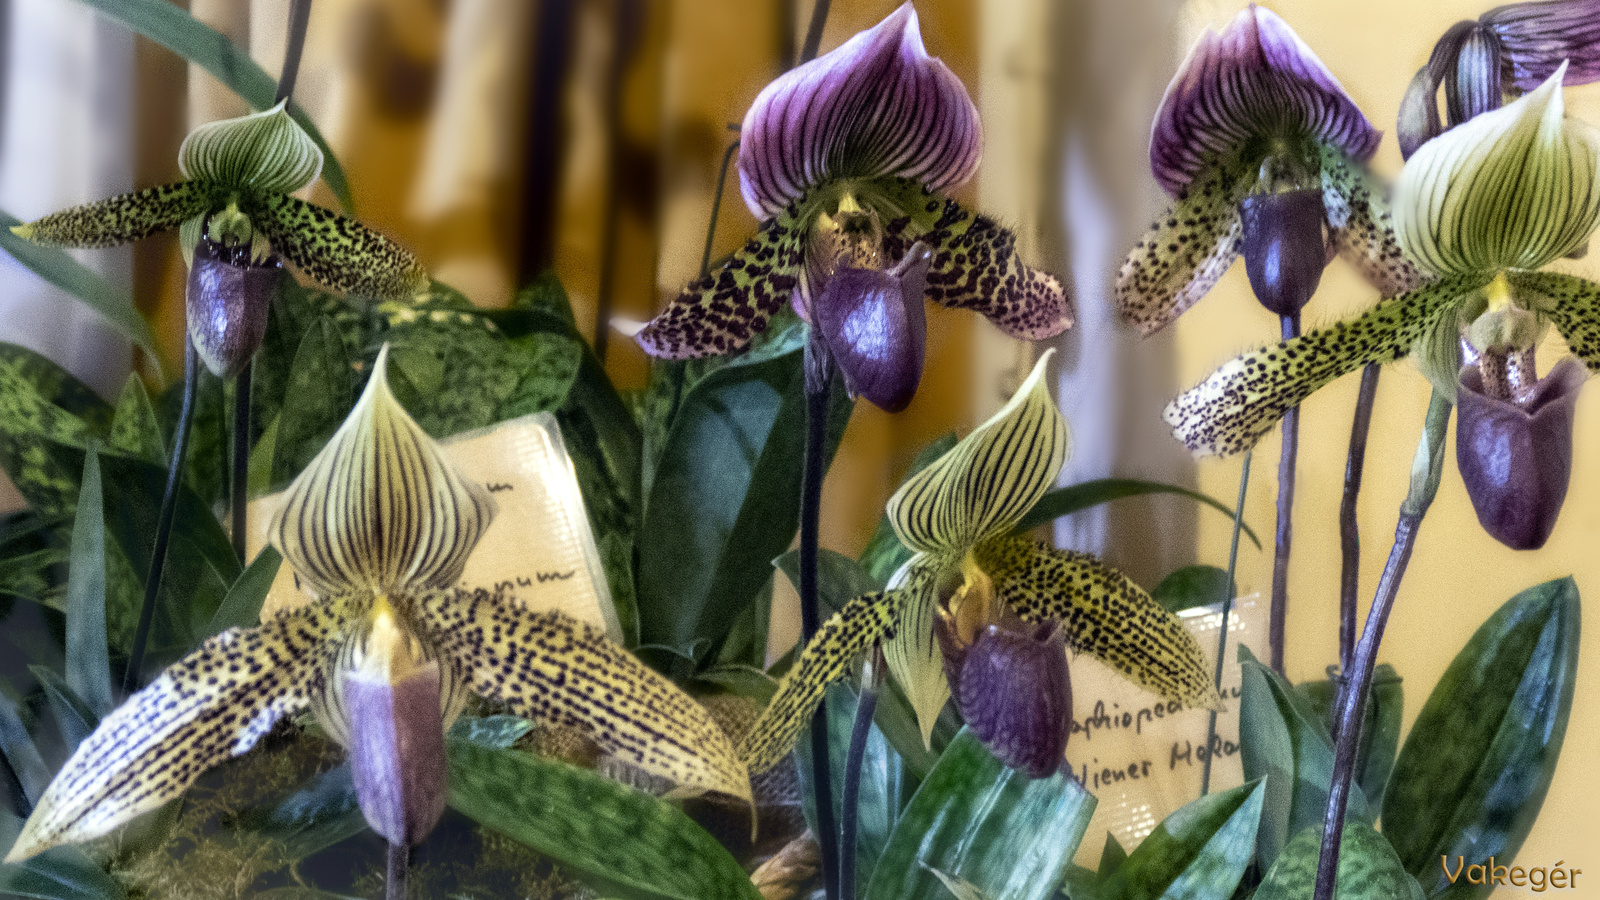 Orchidea - Paphiopedilum Wiener Melange